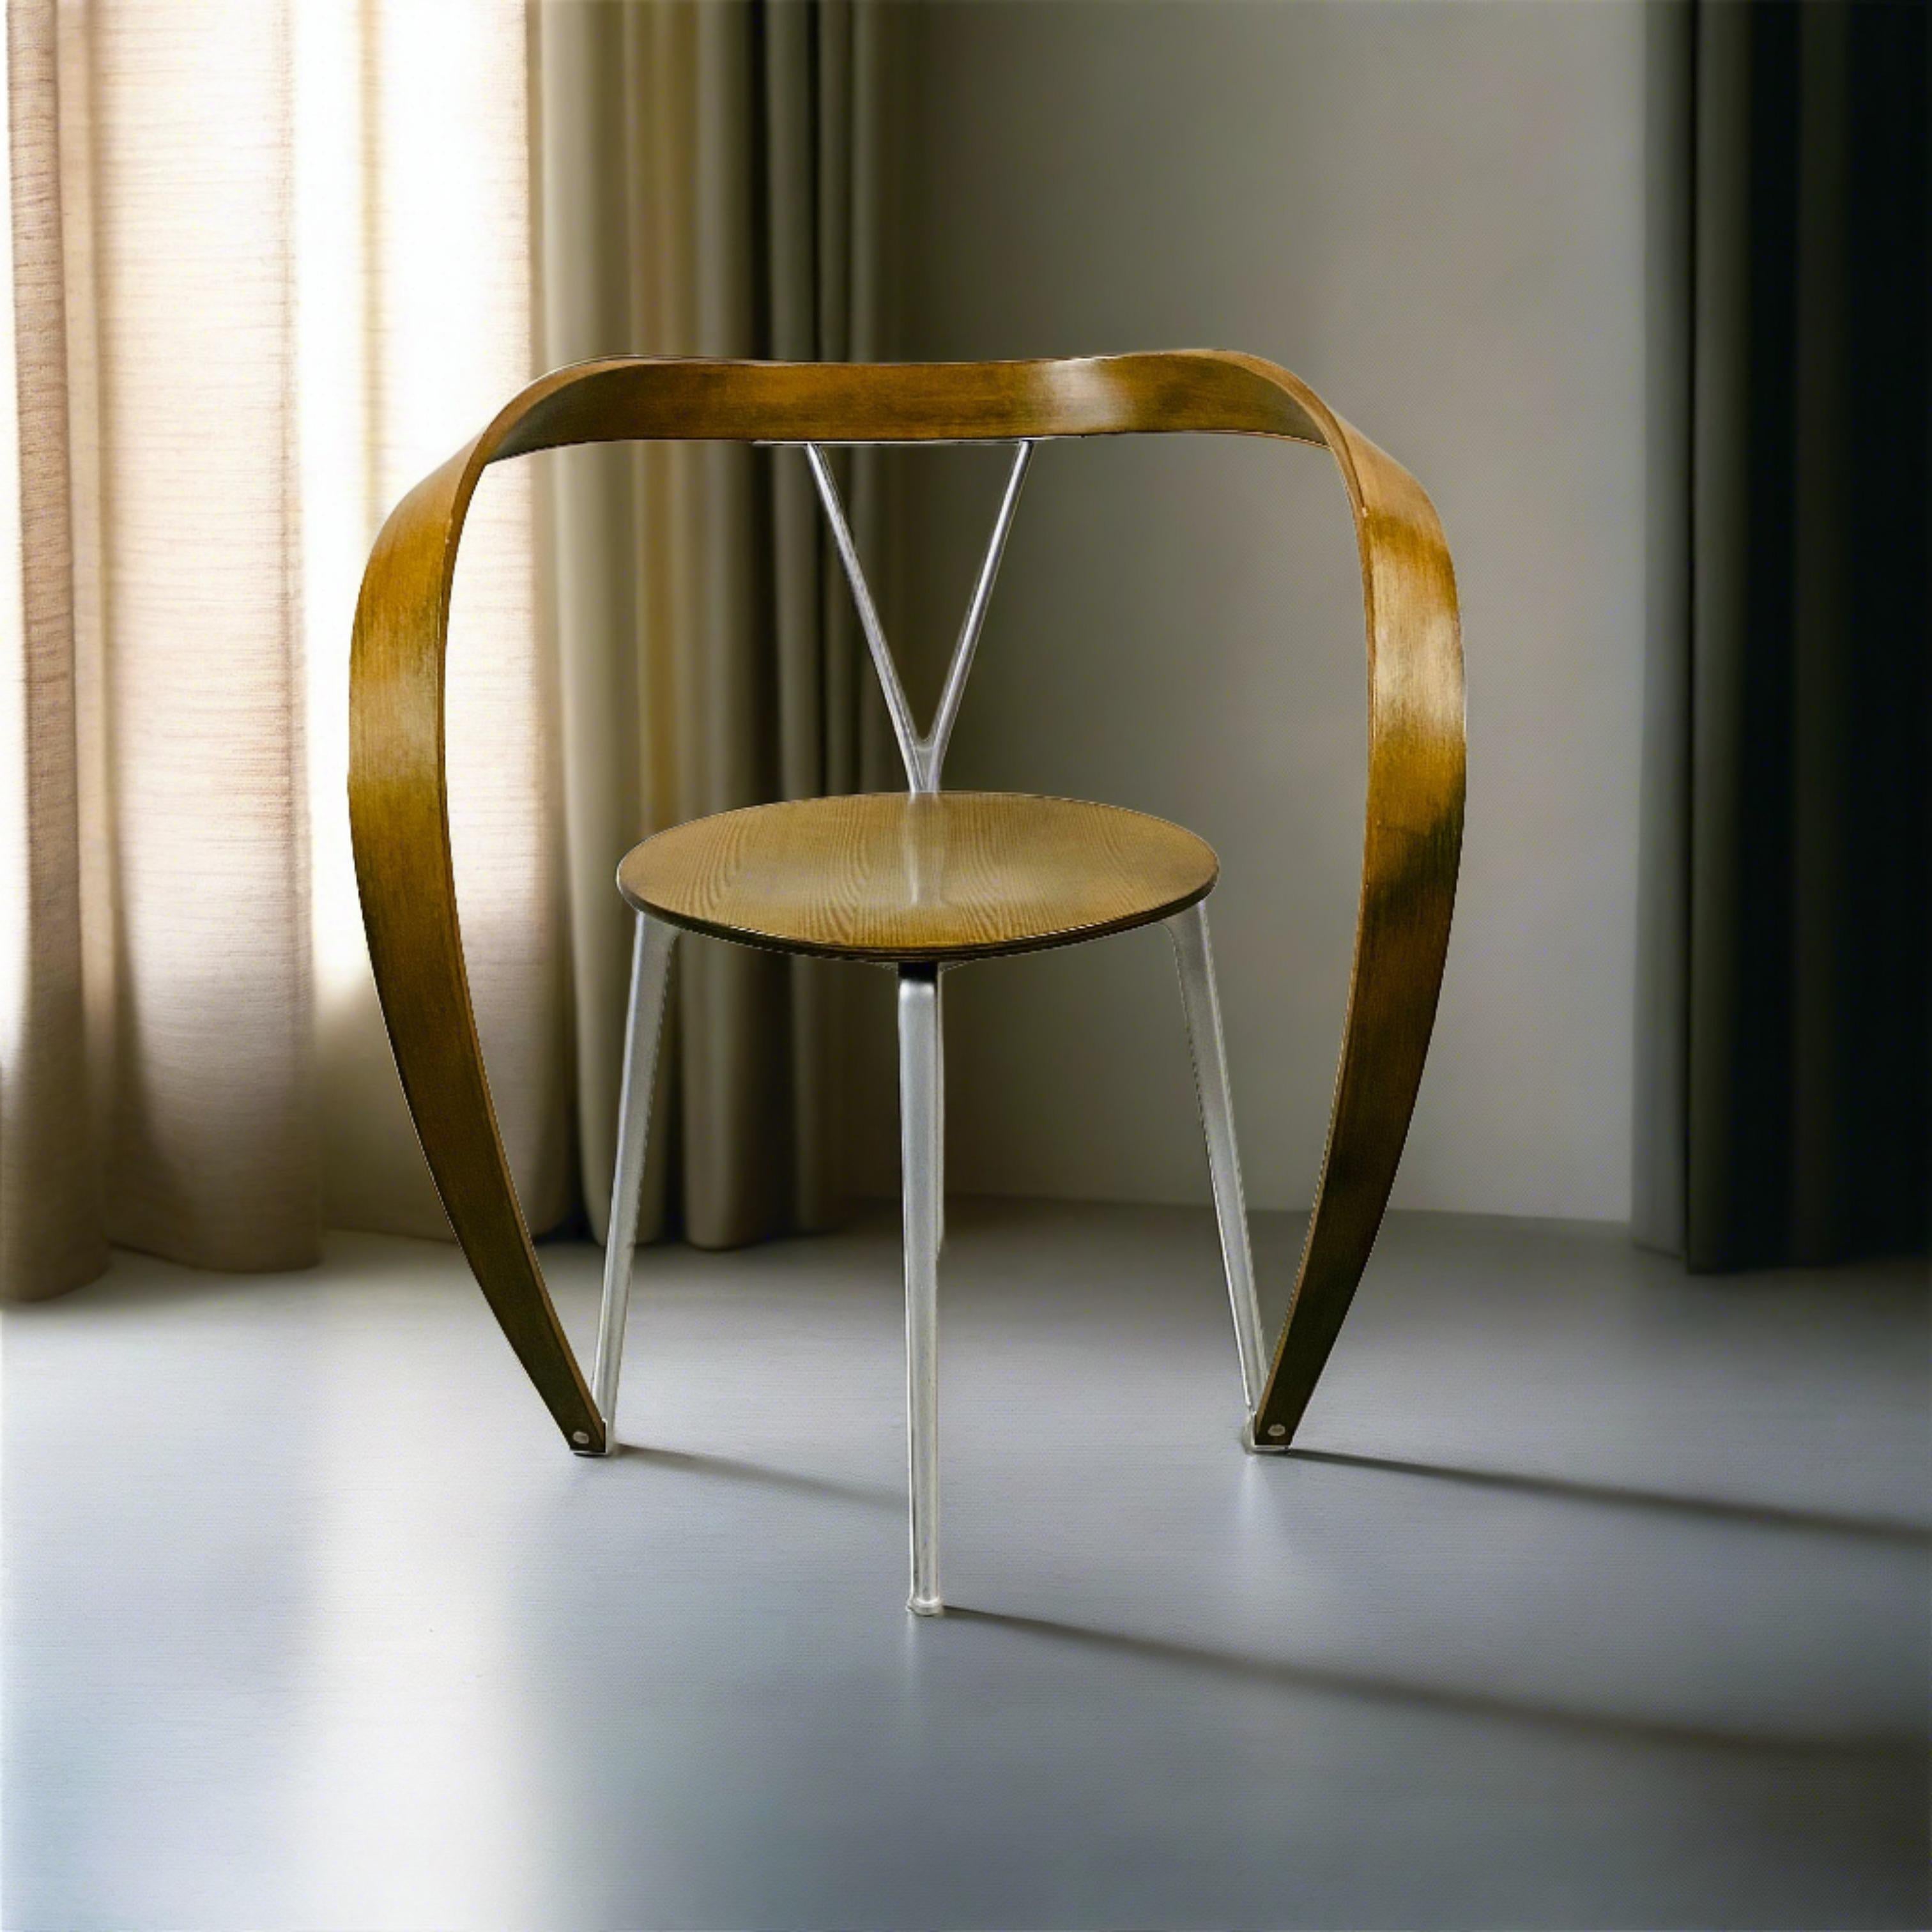 Zeitloses Stück Designgeschichte - der gebrauchte Revers Chair von Andrea Branzi für Cassina. Dieser ikonische Sessel aus dem späten 20. Jahrhundert (ca. 1993) ist ein Zeugnis für die anhaltende Anziehungskraft von durchdachter Handwerkskunst und